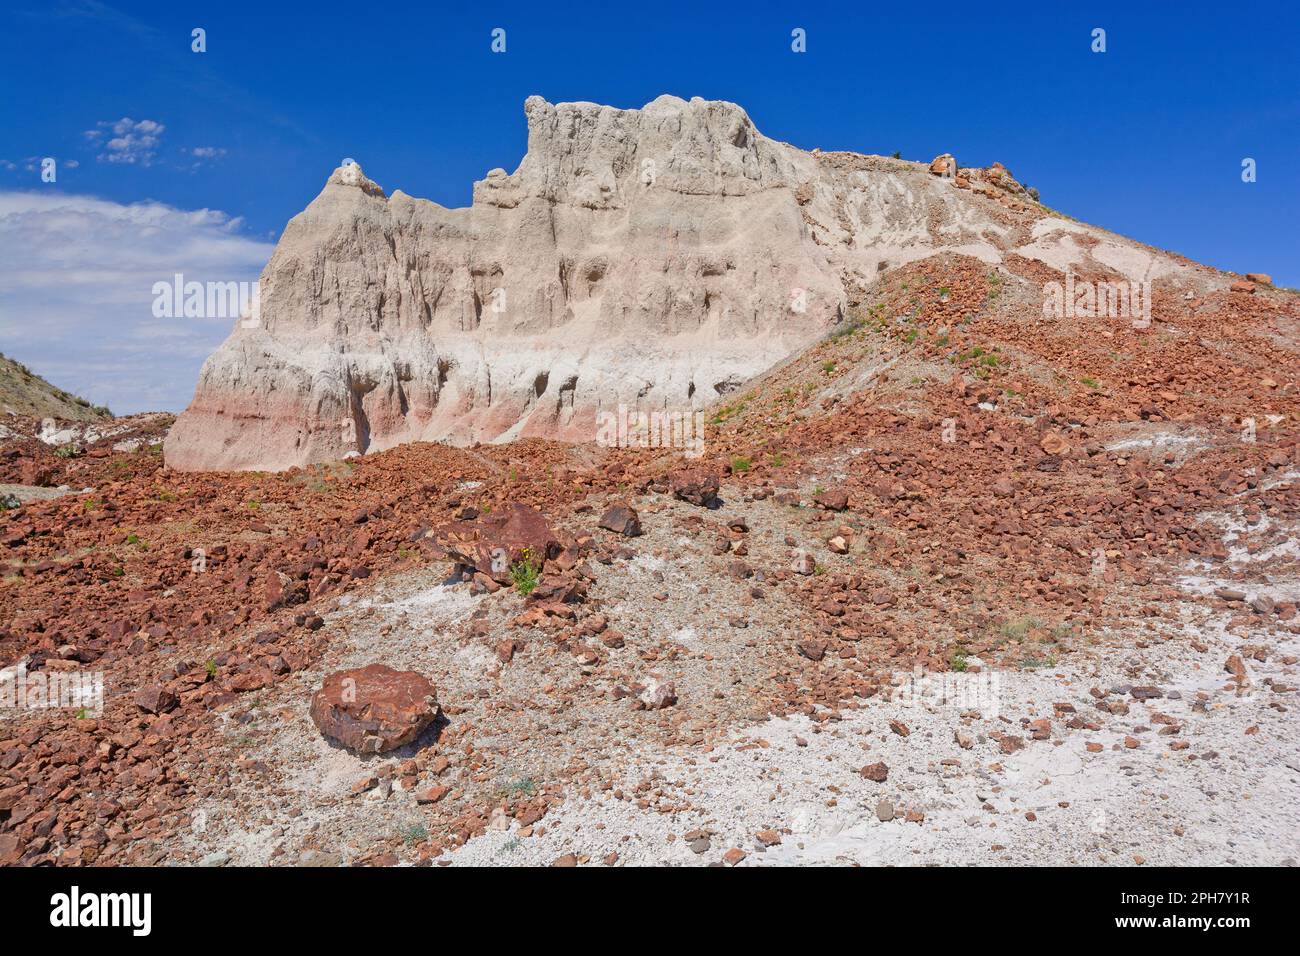 Coloridos restos de roca debajo del Tuff Volcani en el Parque Nacional Big Bend en Texas Foto de stock